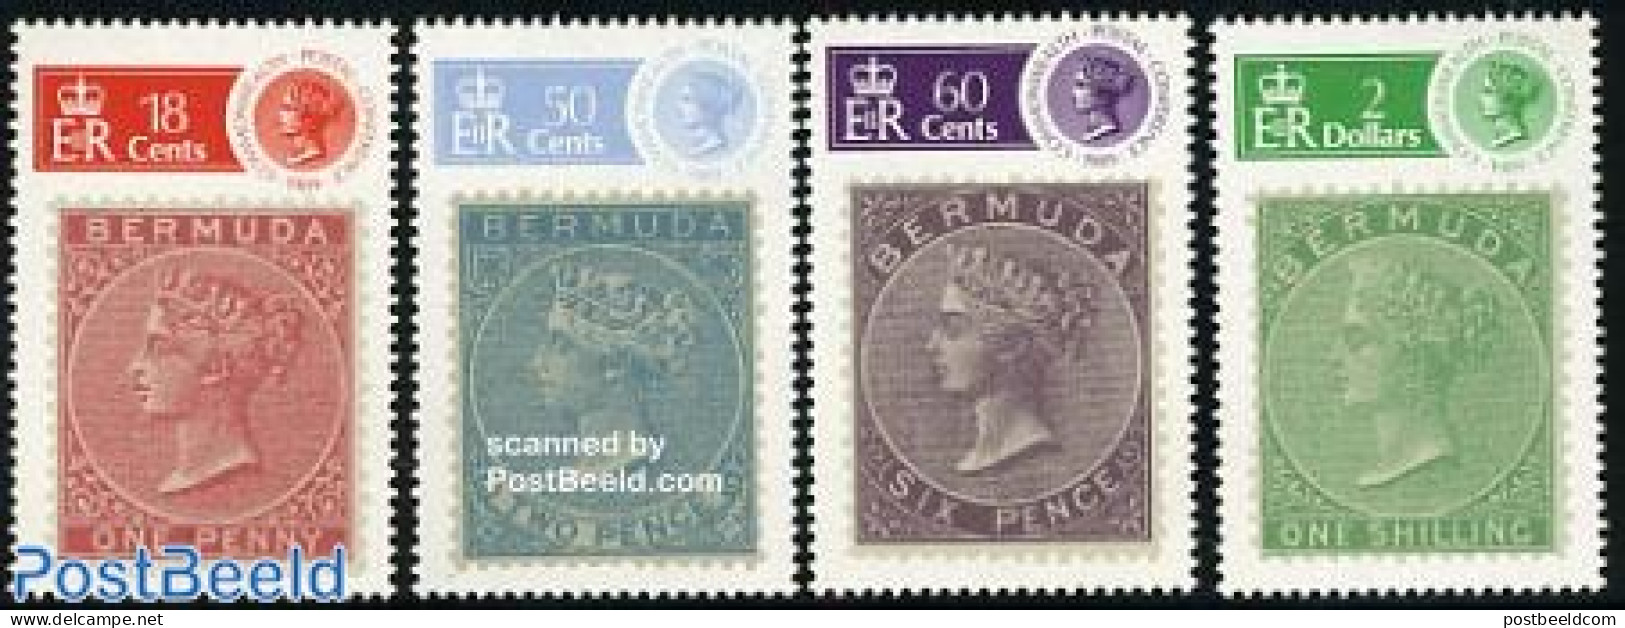 Bermuda 1989 Postal Conference 4v, Mint NH, Stamps On Stamps - Stamps On Stamps